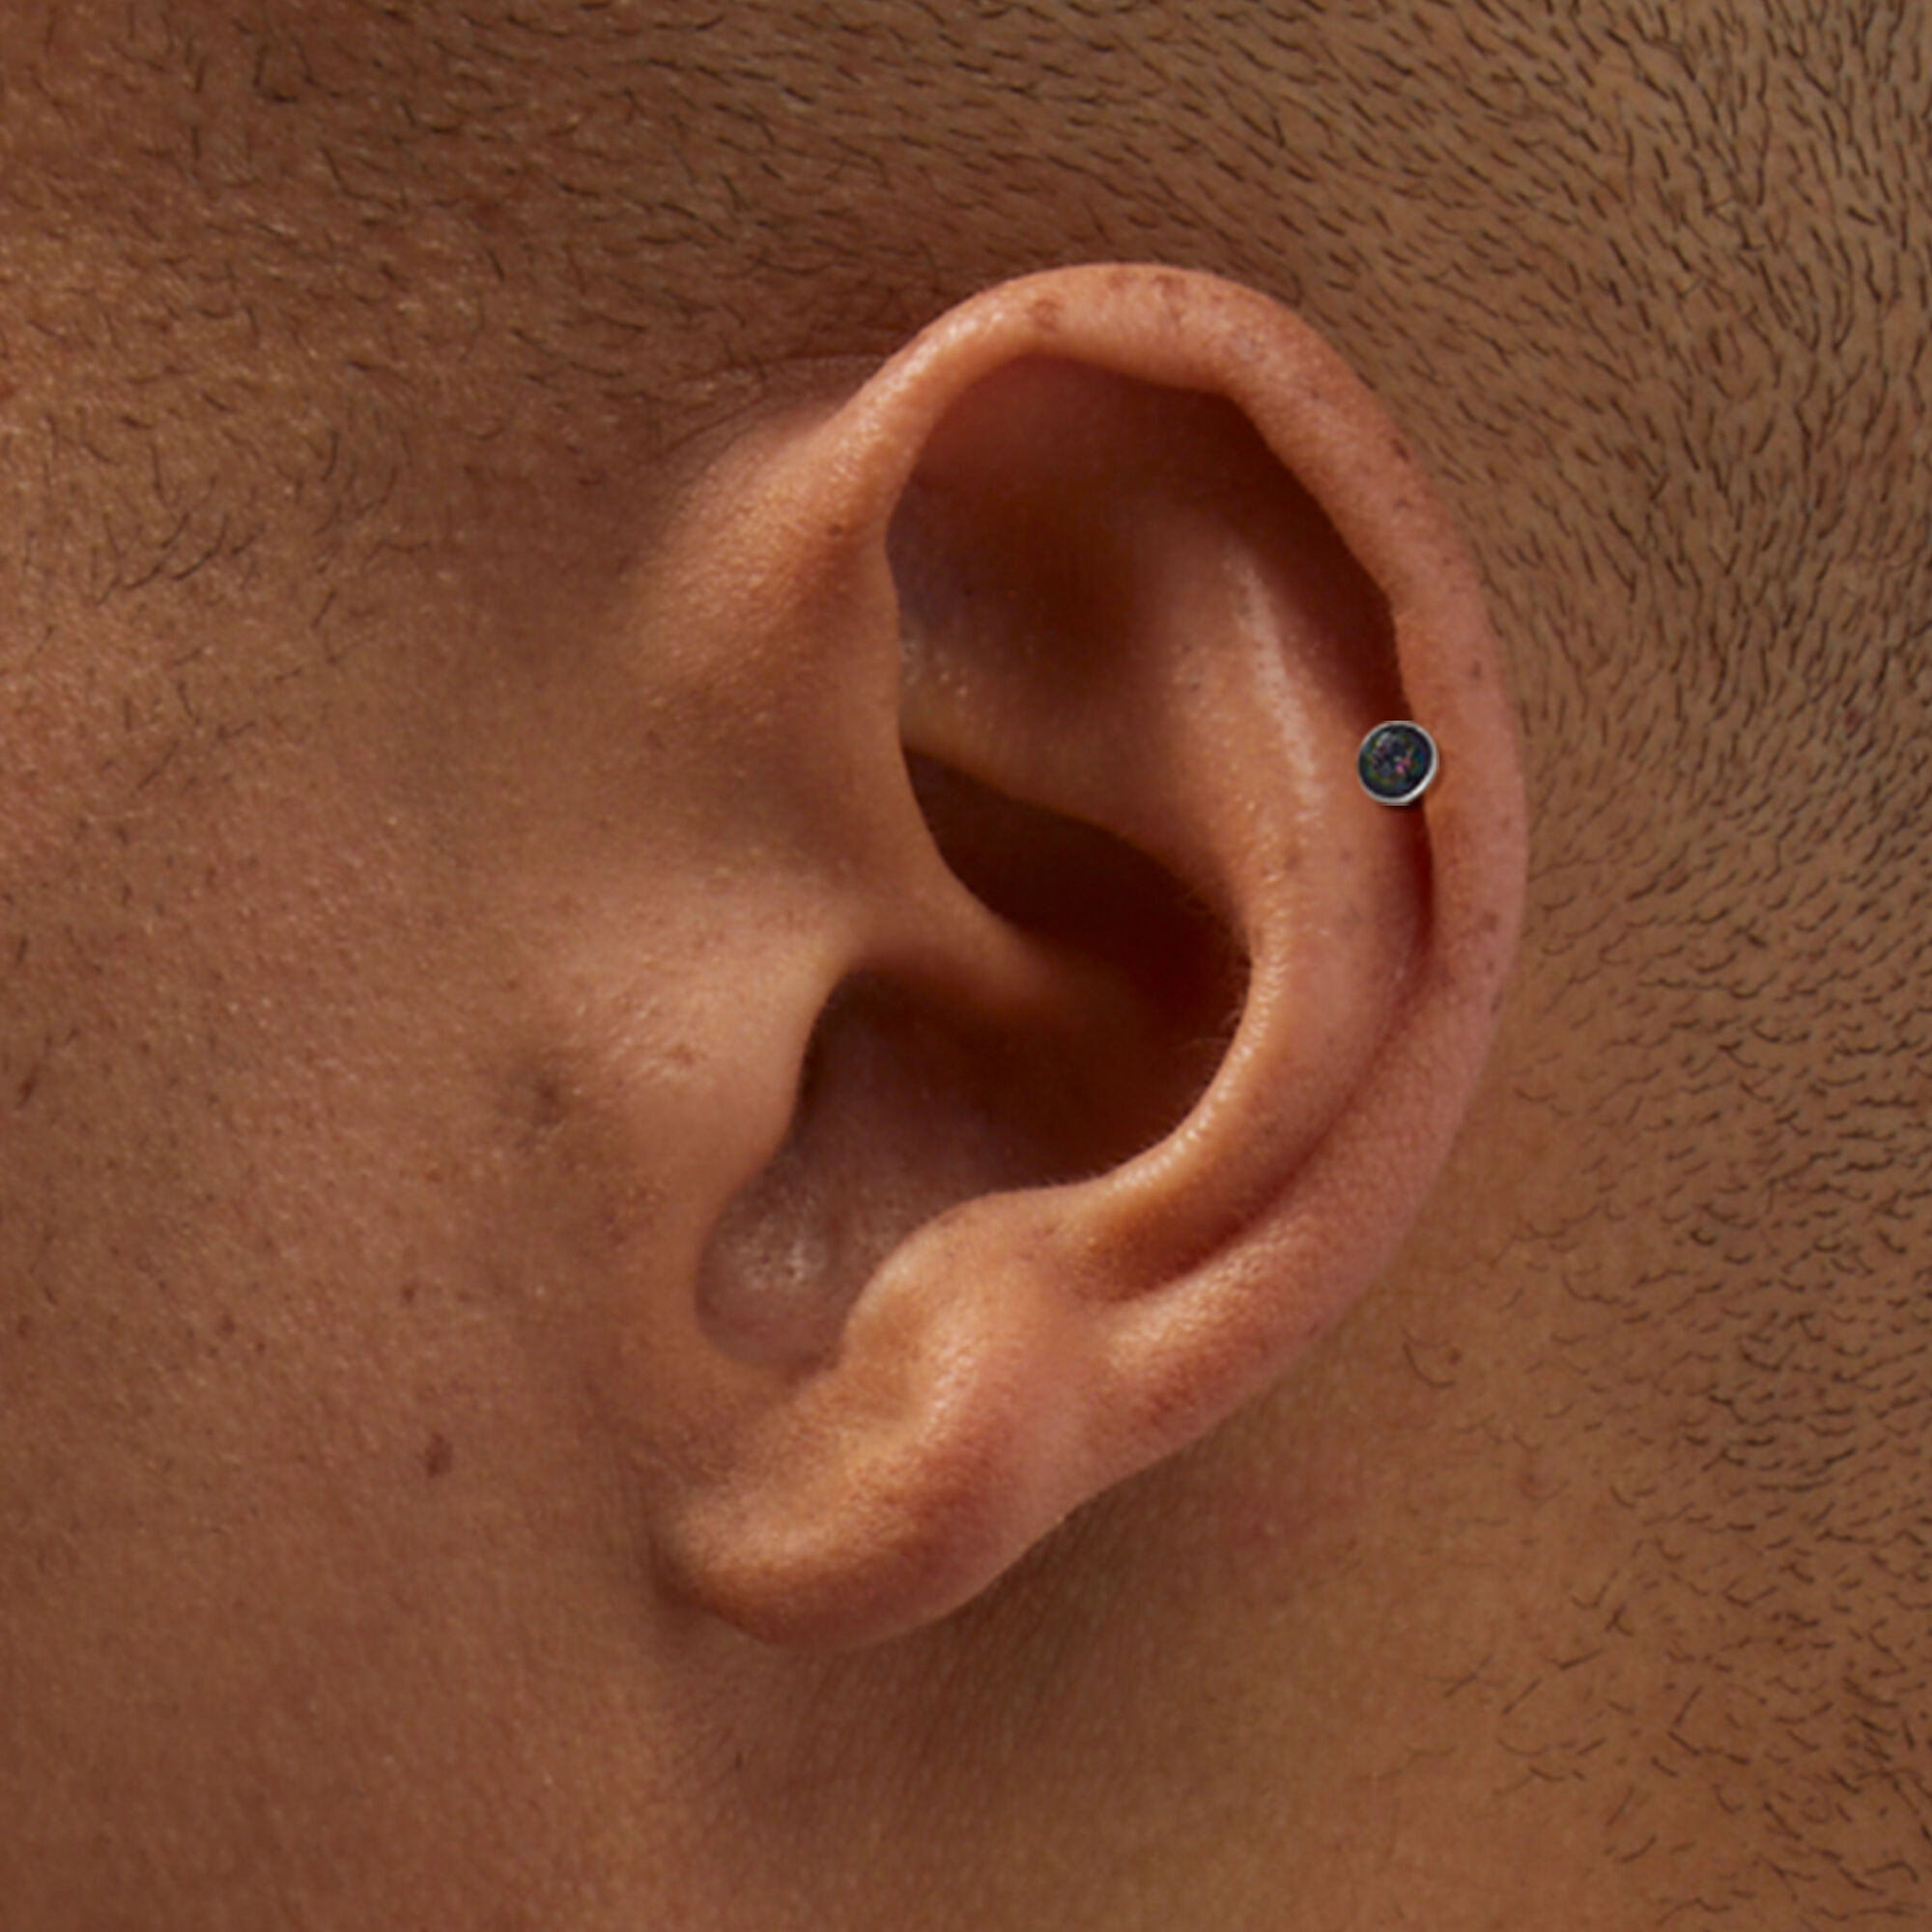 Silver Cartilage Earrings, 925 Sterling Silver Hoops, Silver Snug Hoops |  eBay